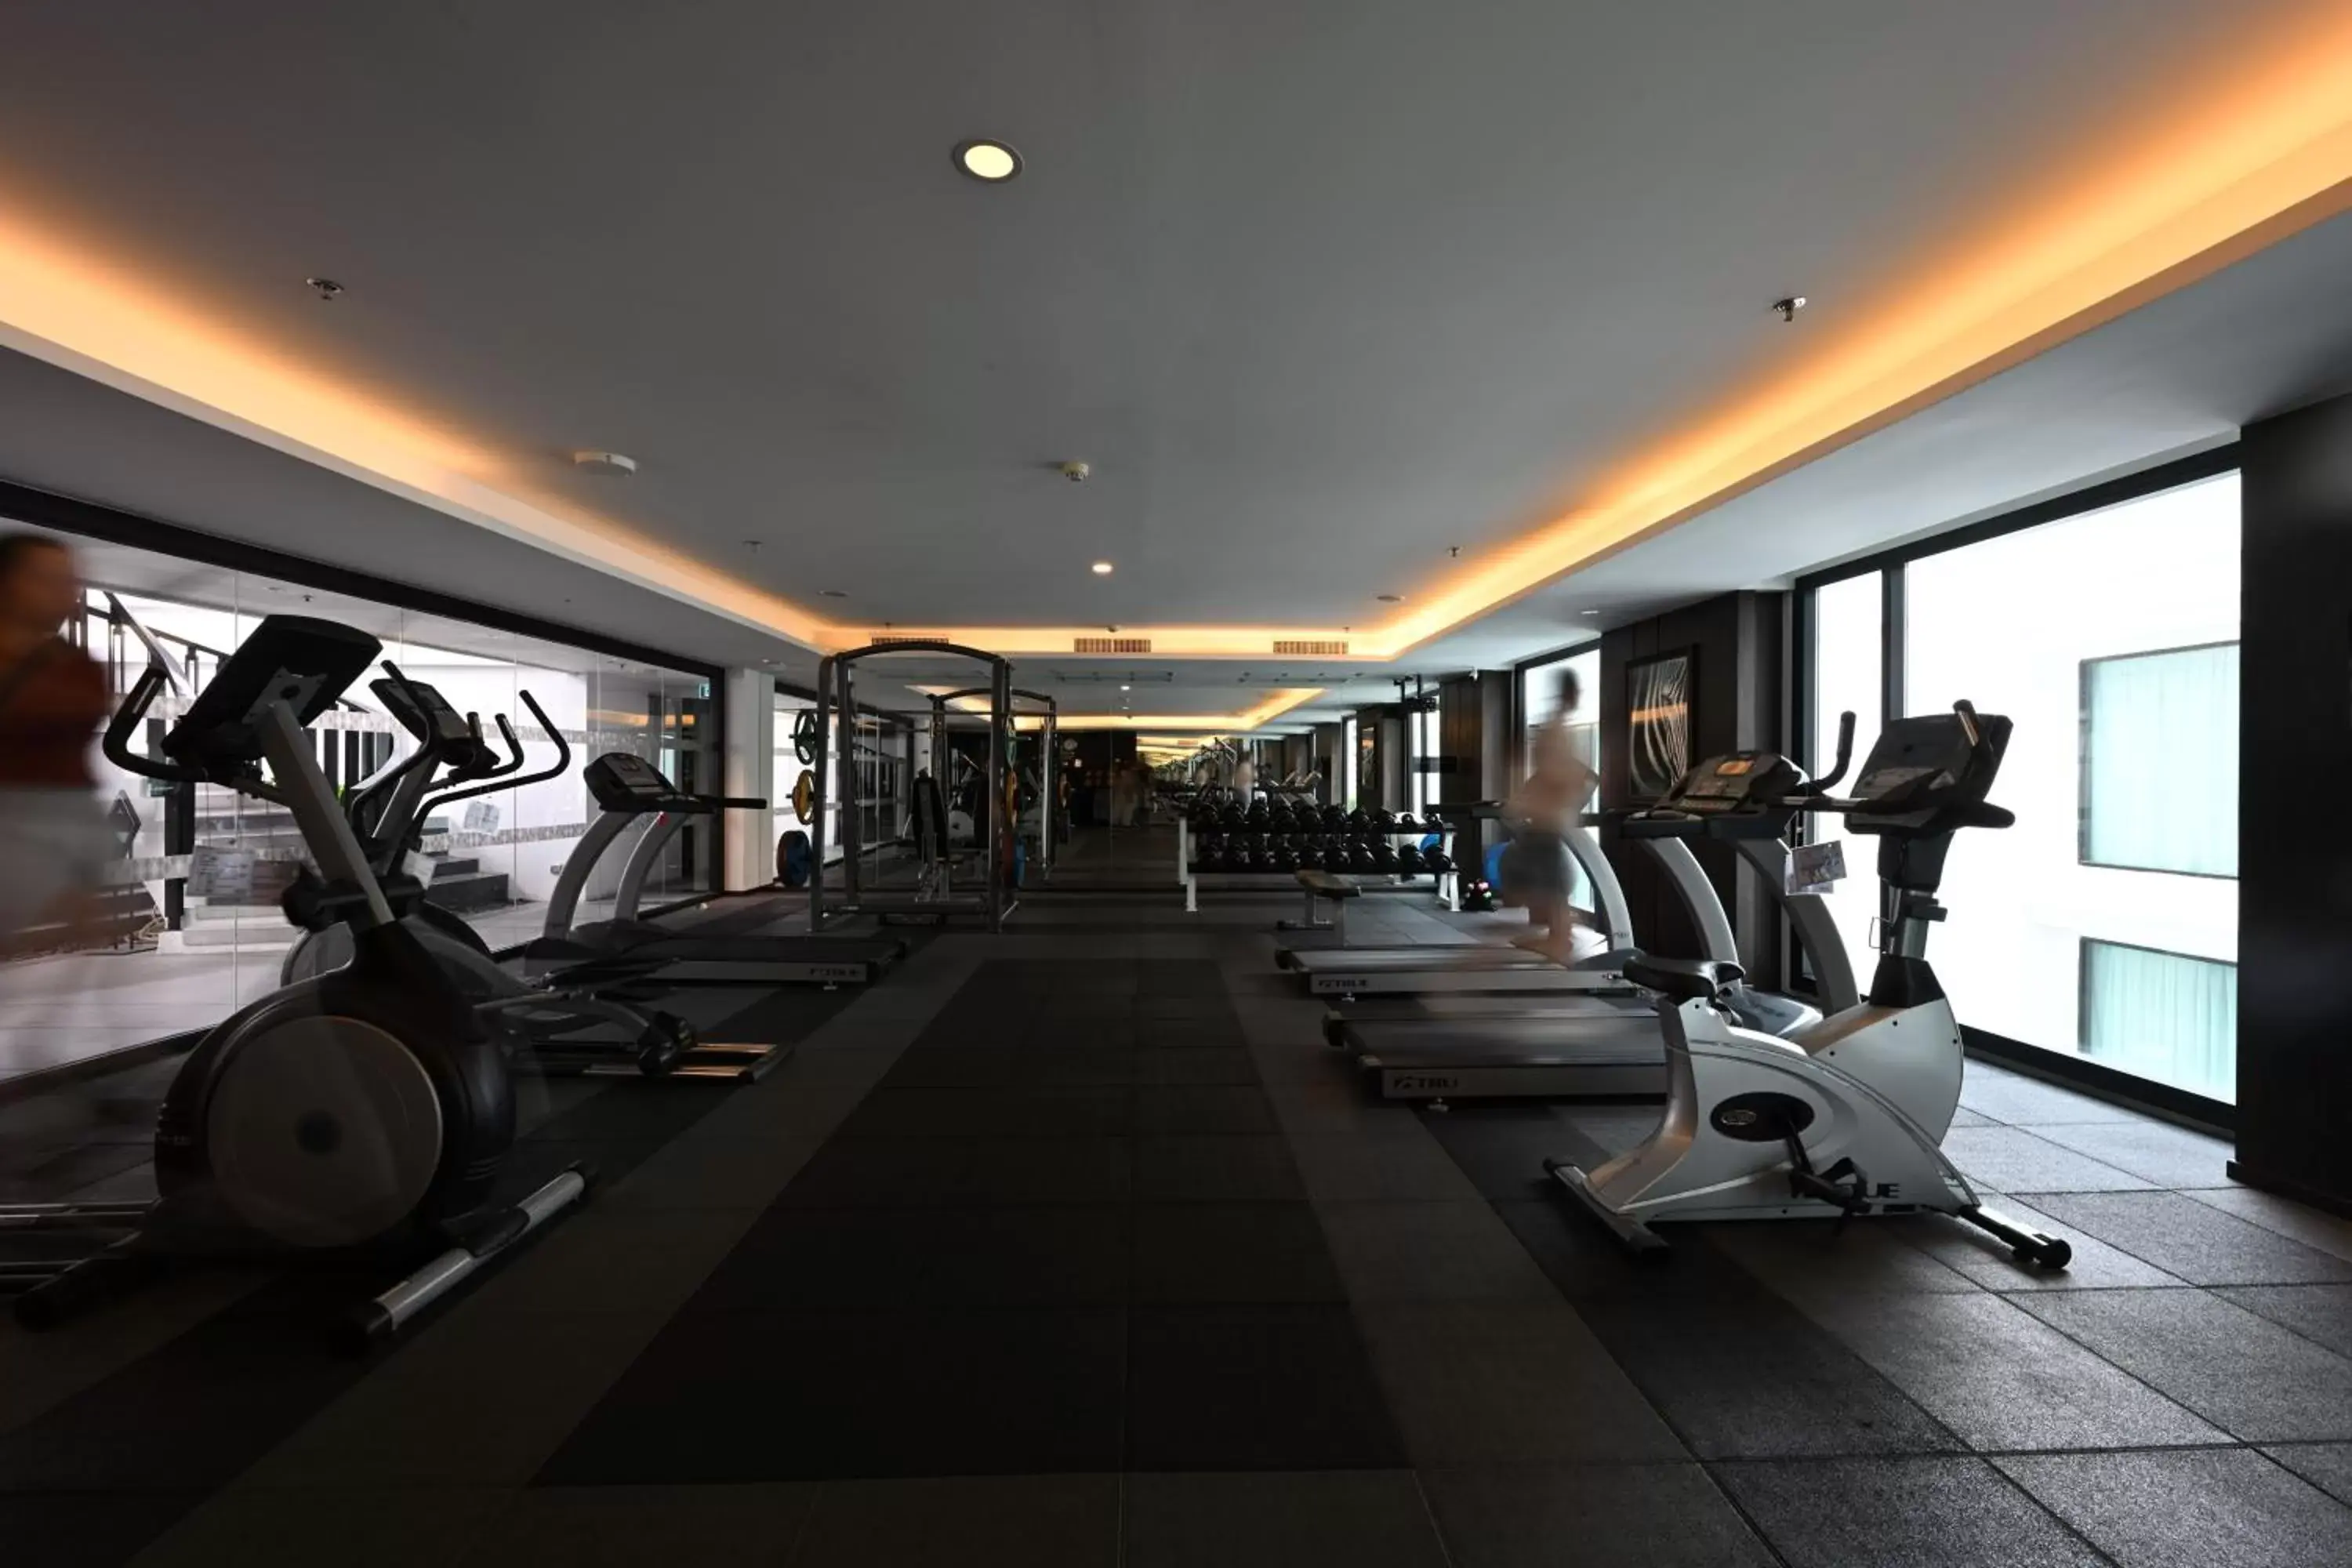 Fitness centre/facilities, Fitness Center/Facilities in Mövenpick Hotel Sukhumvit 15 Bangkok